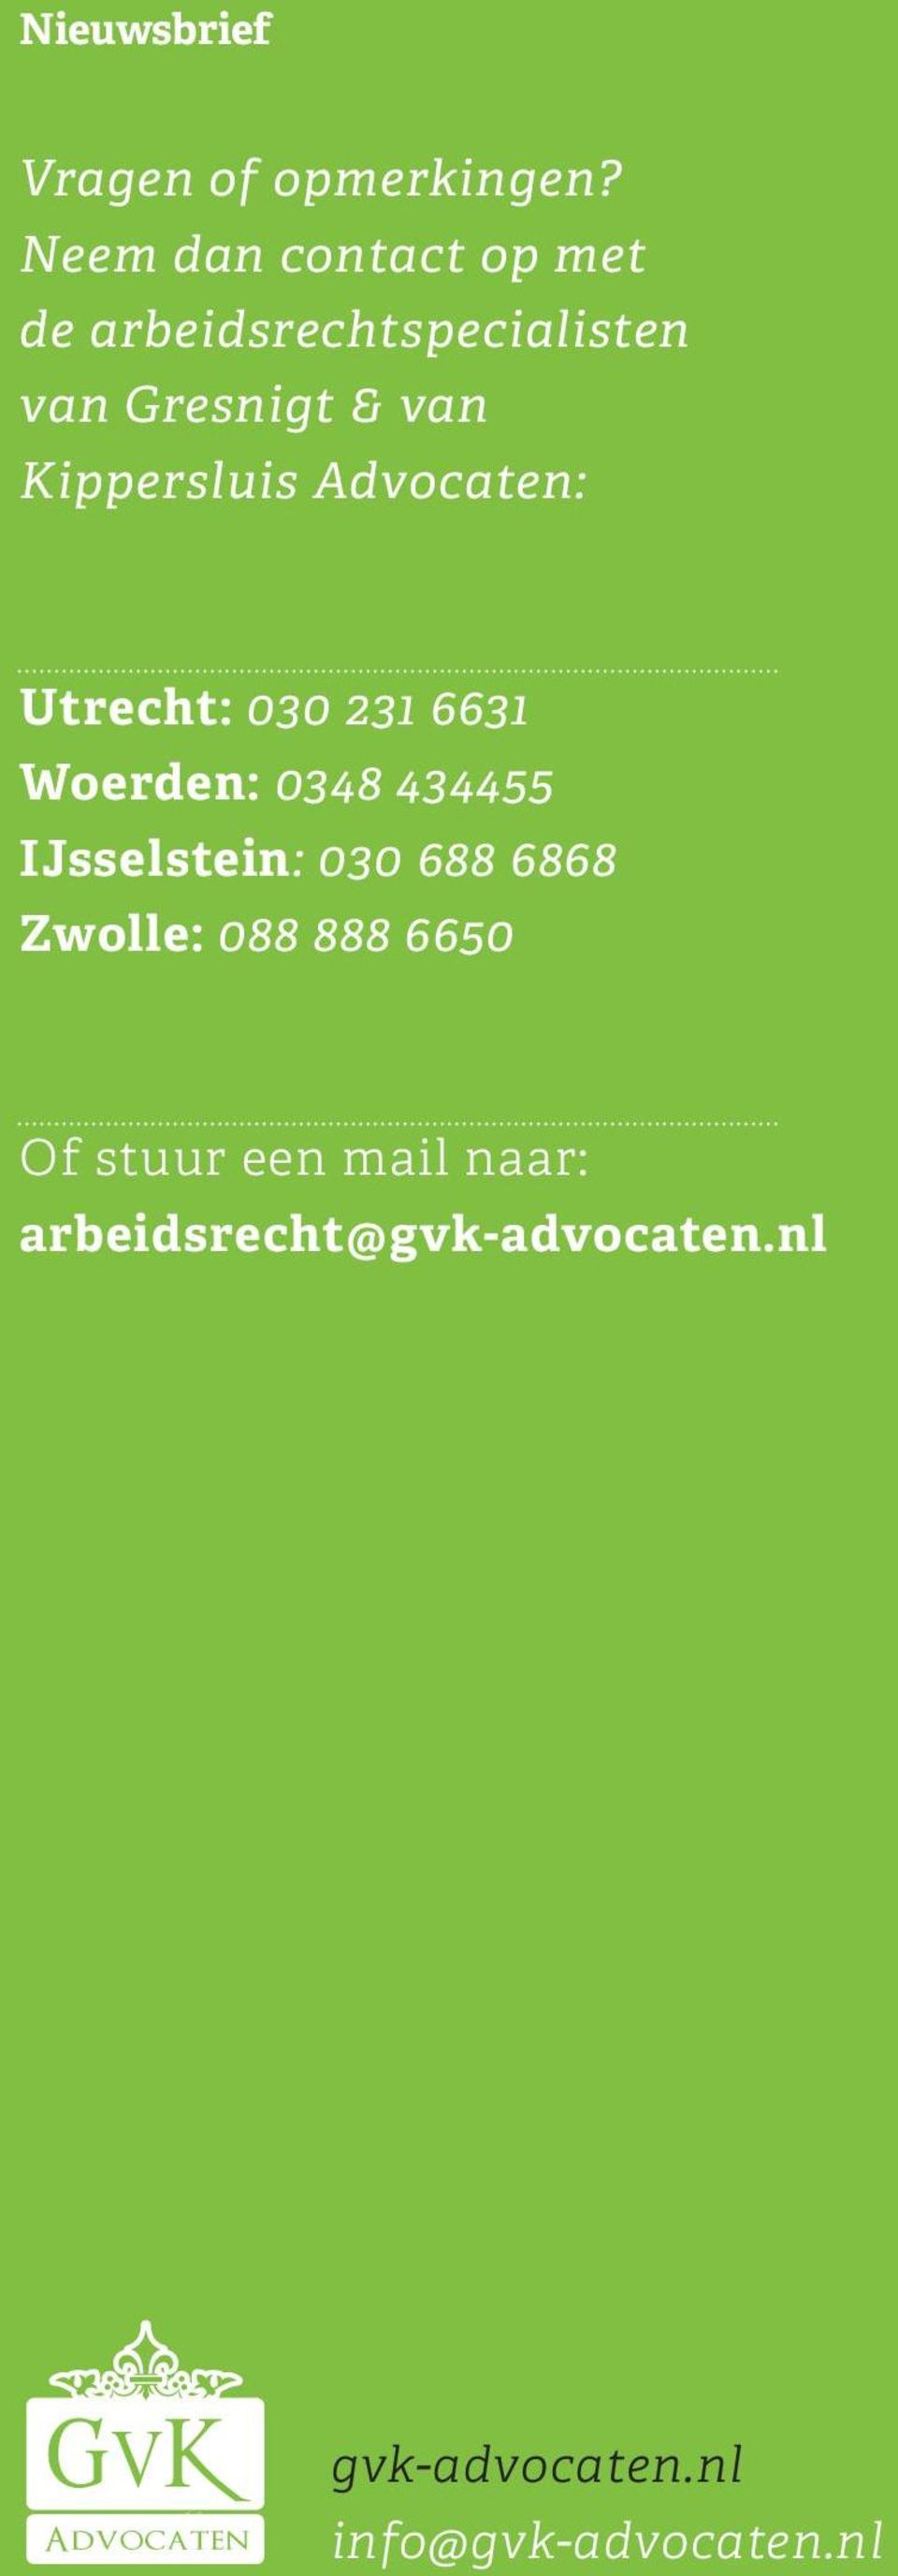 Kippersluis Advocaten: Utrecht: 030 231 6631 Woerden: 0348 434455